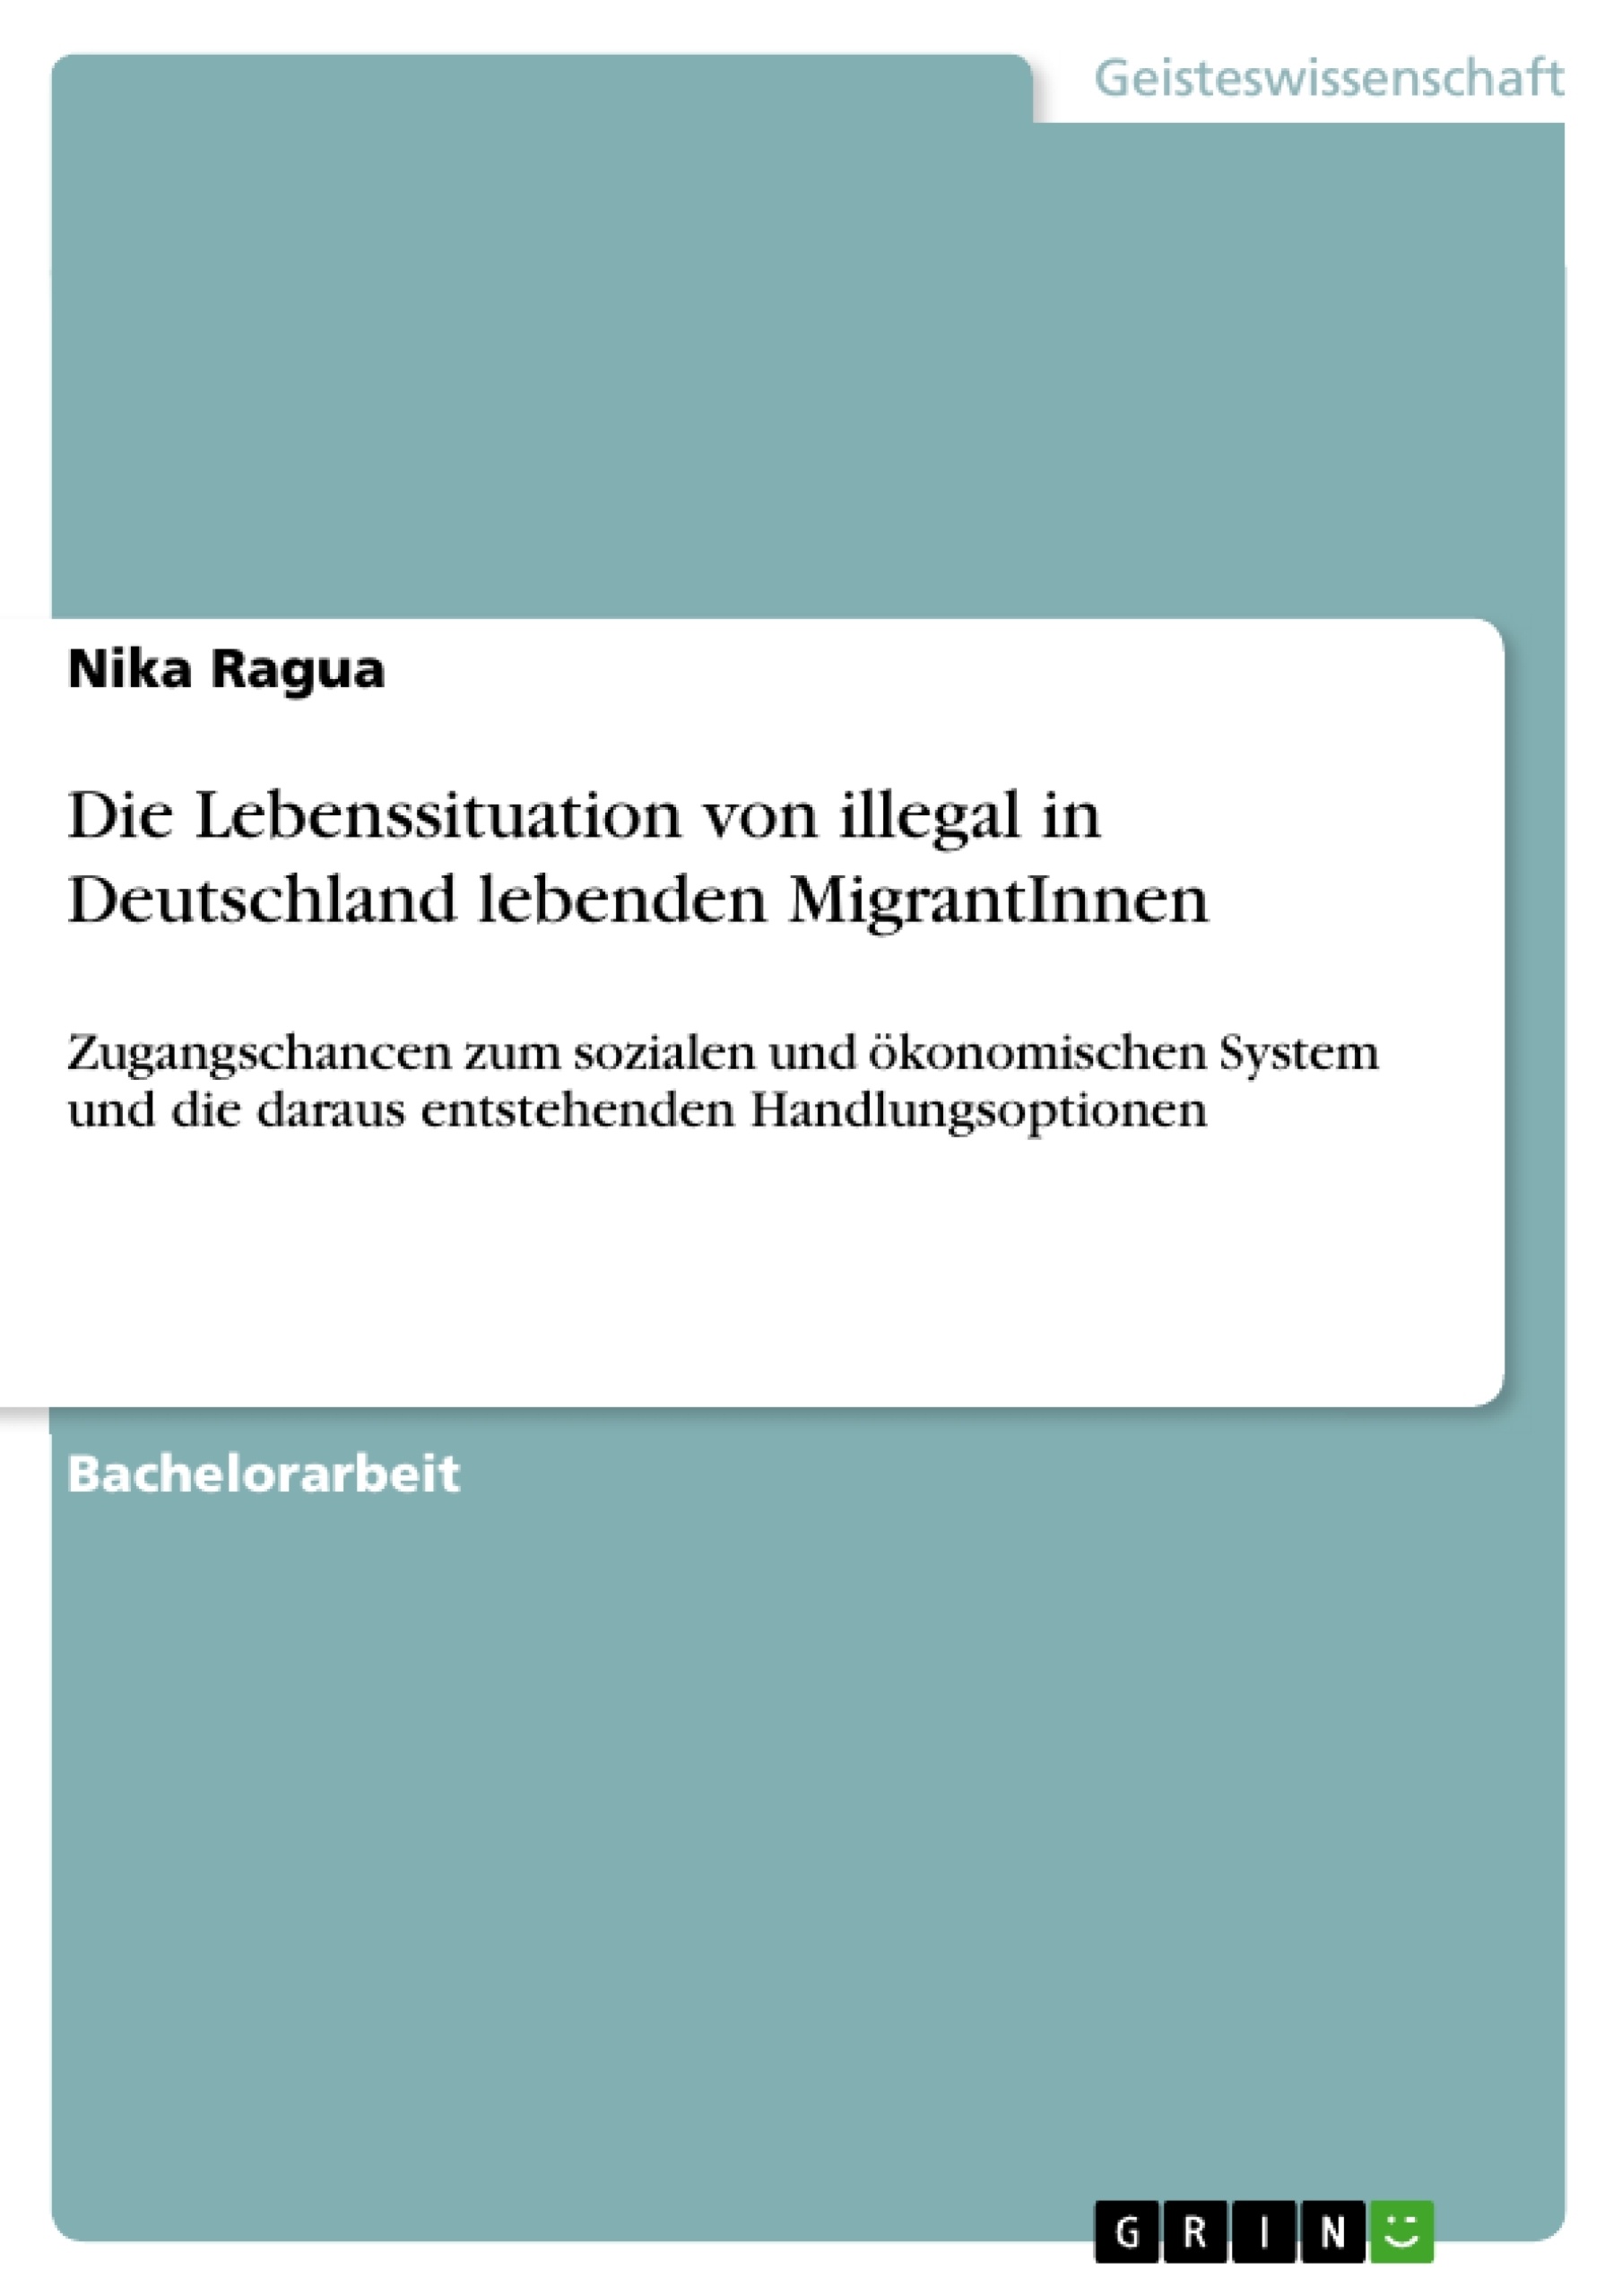 Title: Die Lebenssituation von illegal in Deutschland lebenden MigrantInnen